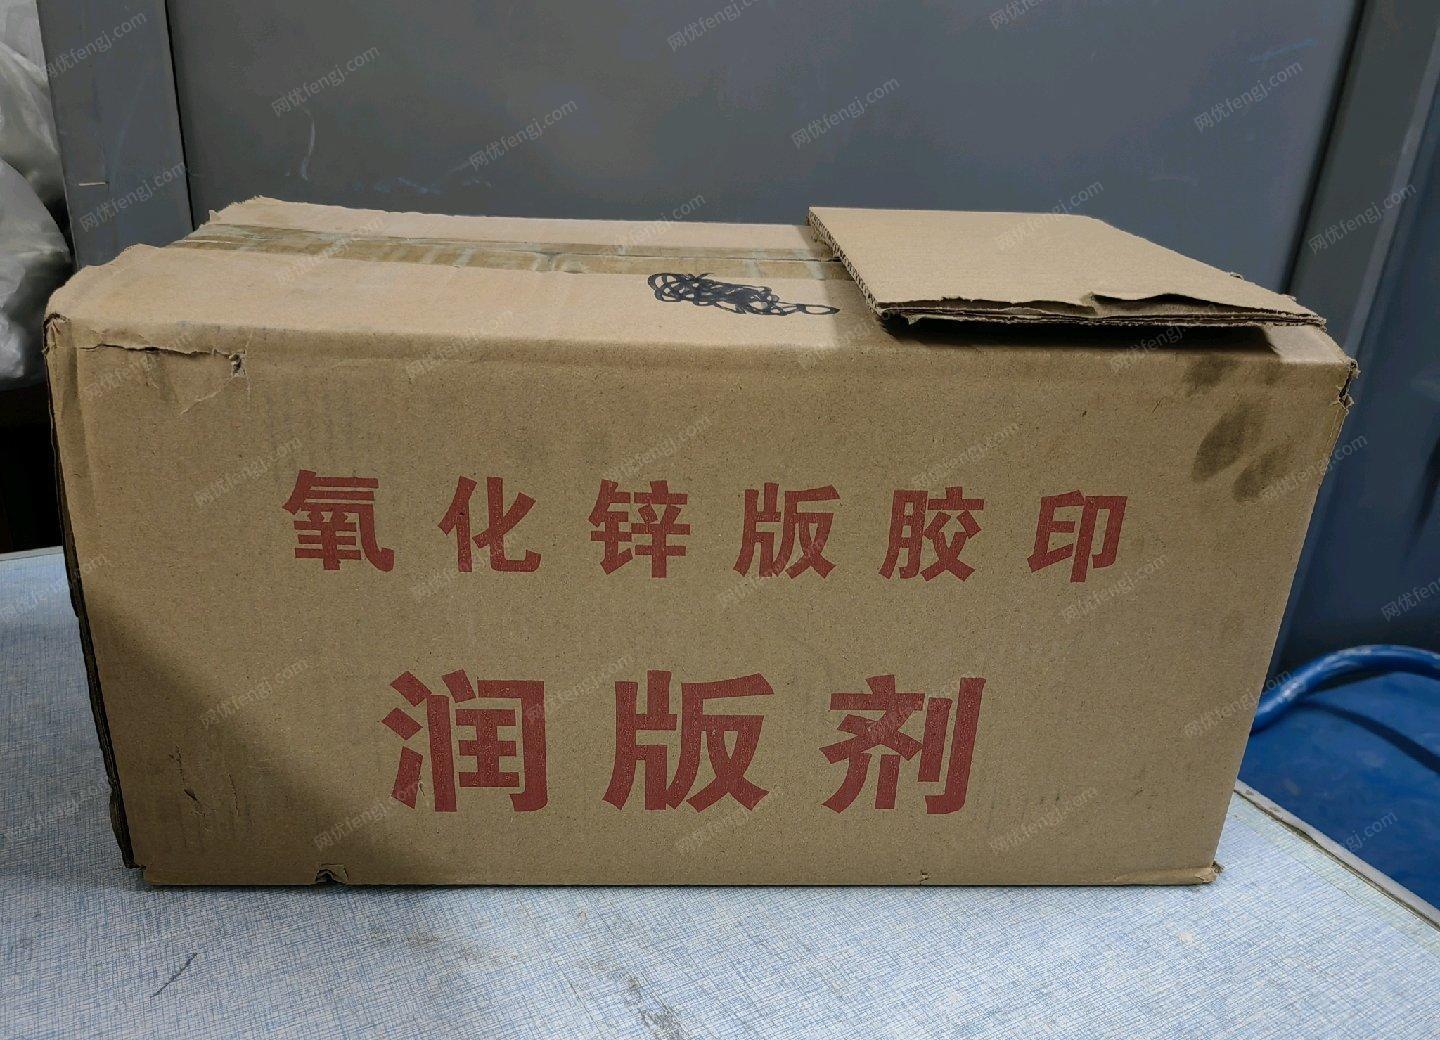 黑龙江哈尔滨出售1800AB胶印机。17年购买的，每年只用于2个月左右的试